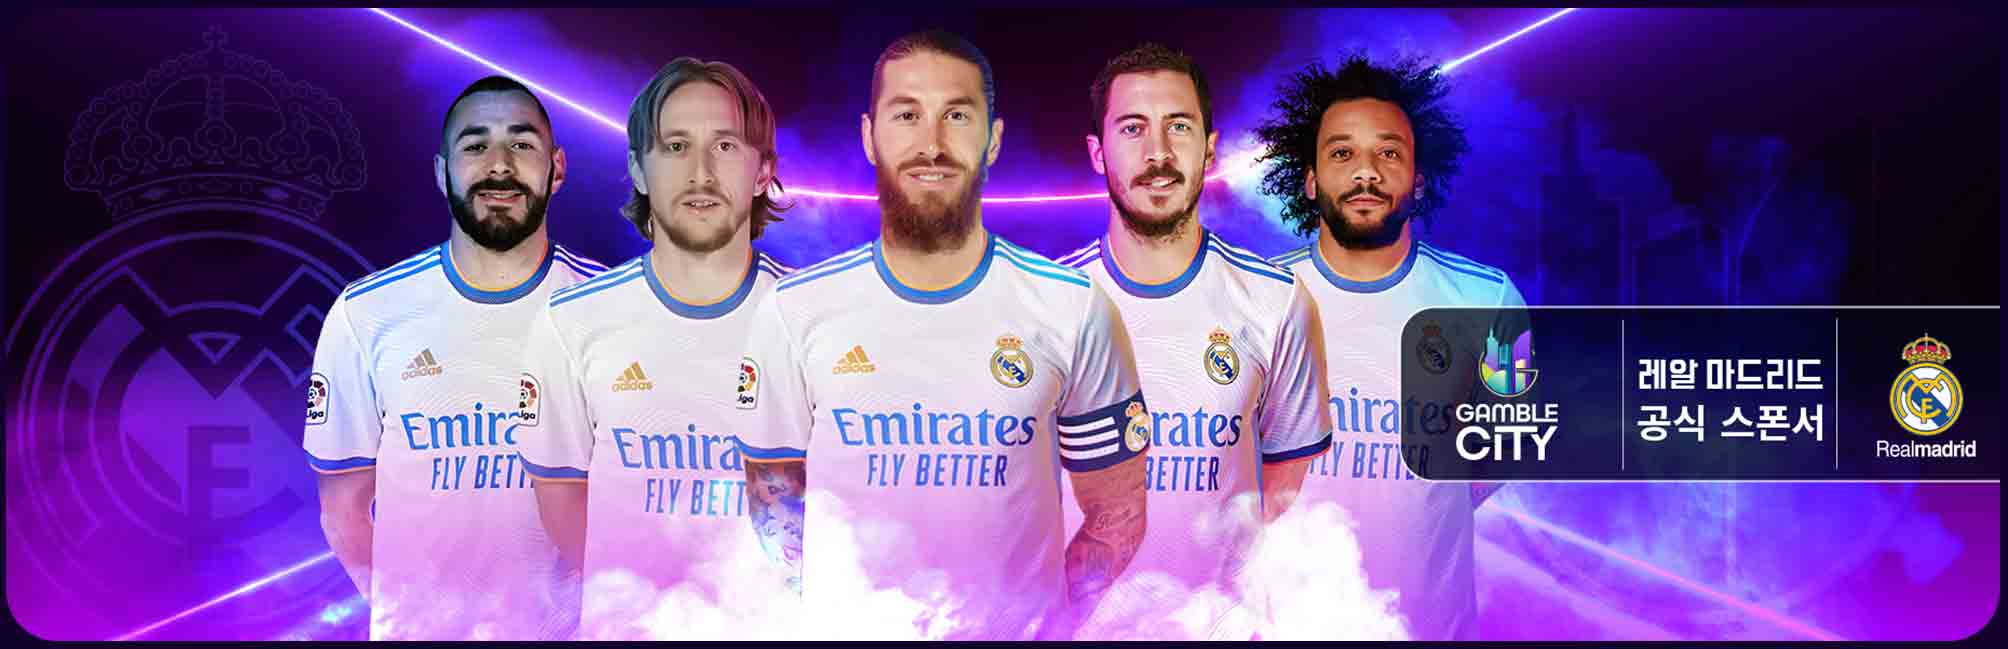 Real Madrid Gamble City